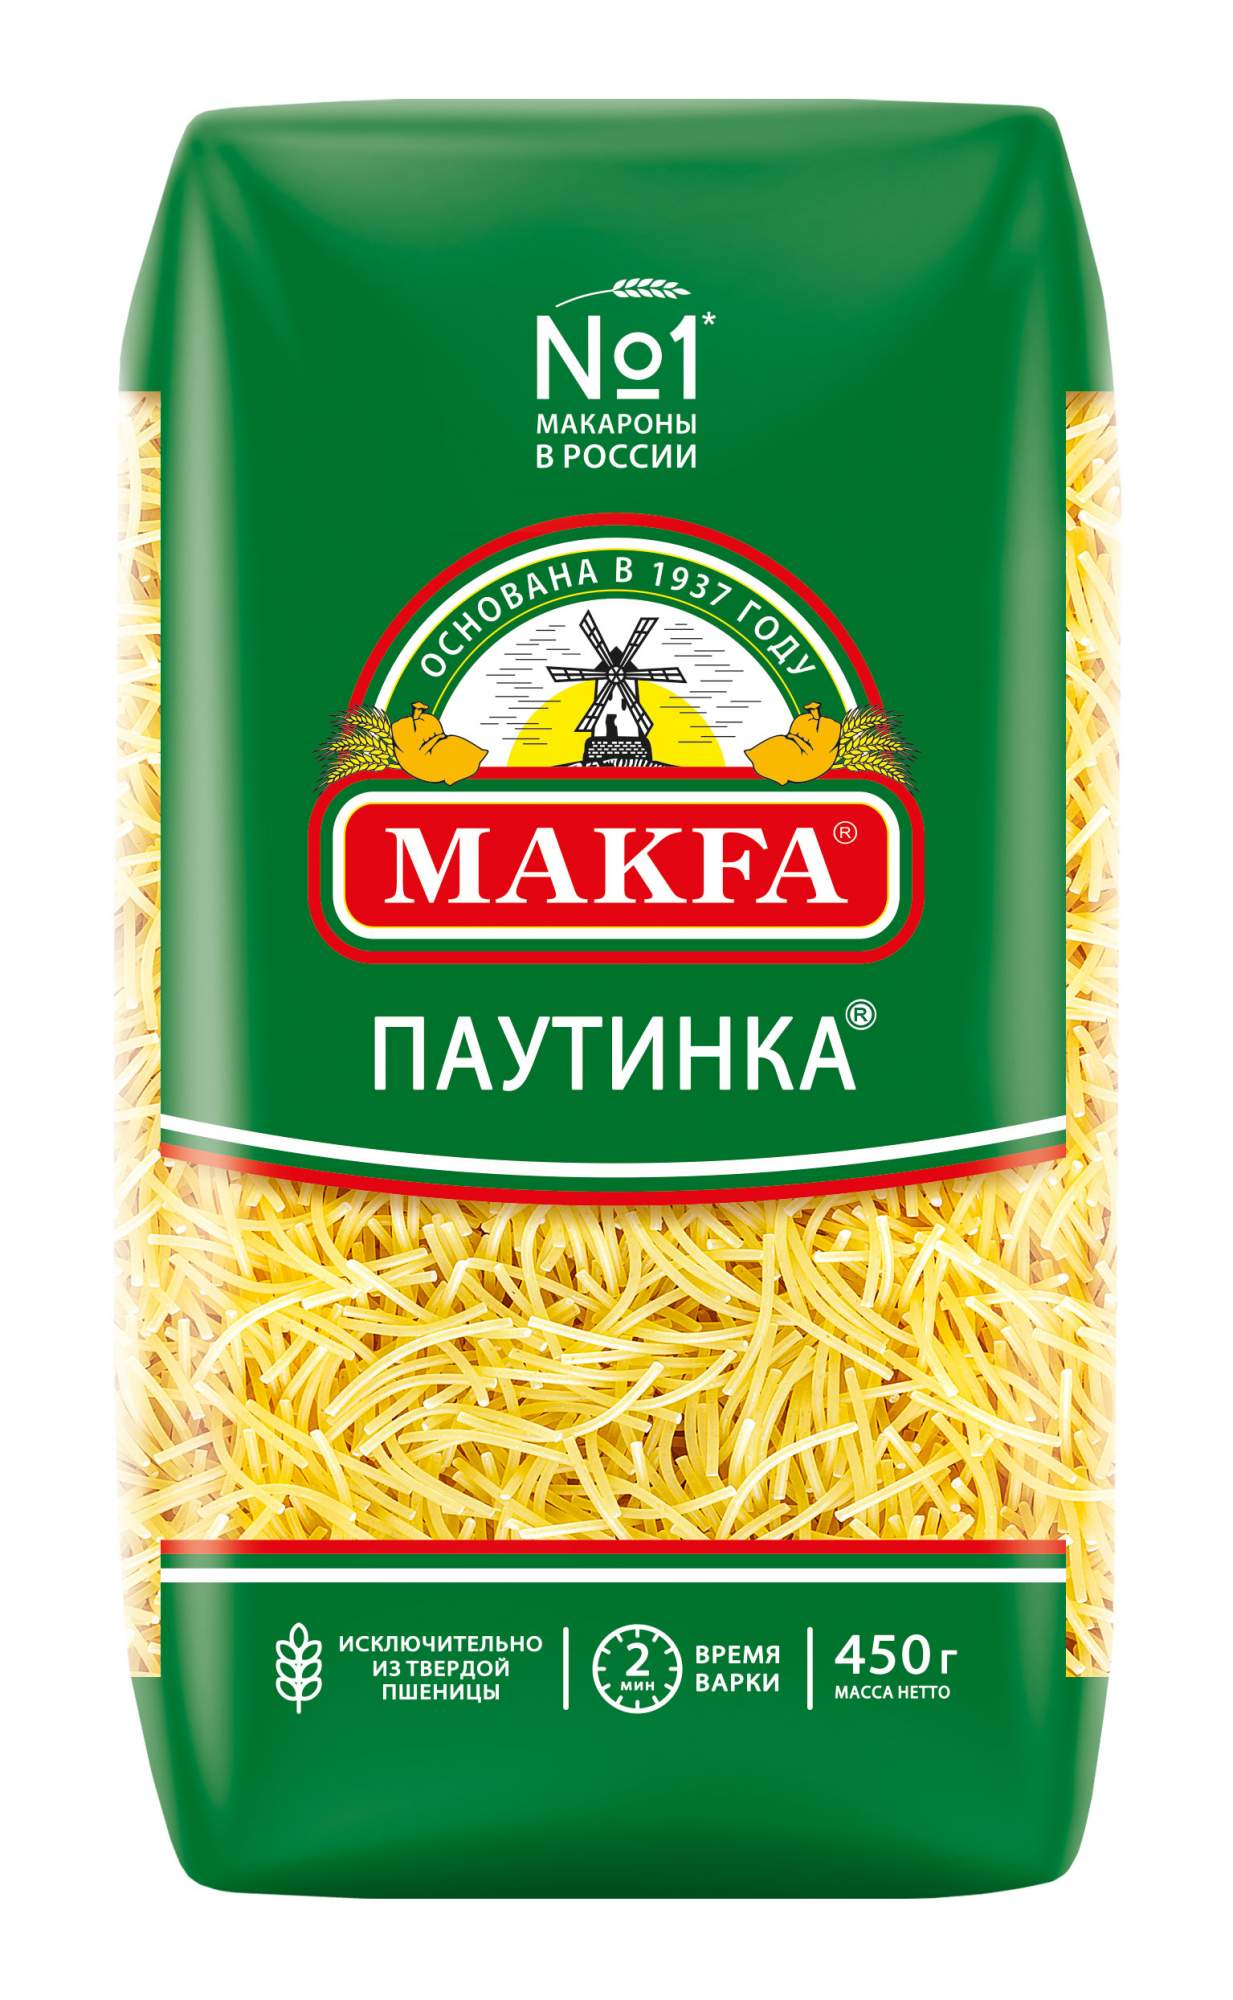 Макаронные изделия Makfa Вермишель паутинка 450 г - купить в Мегамаркет Новосибирск, цена на Мегамаркет